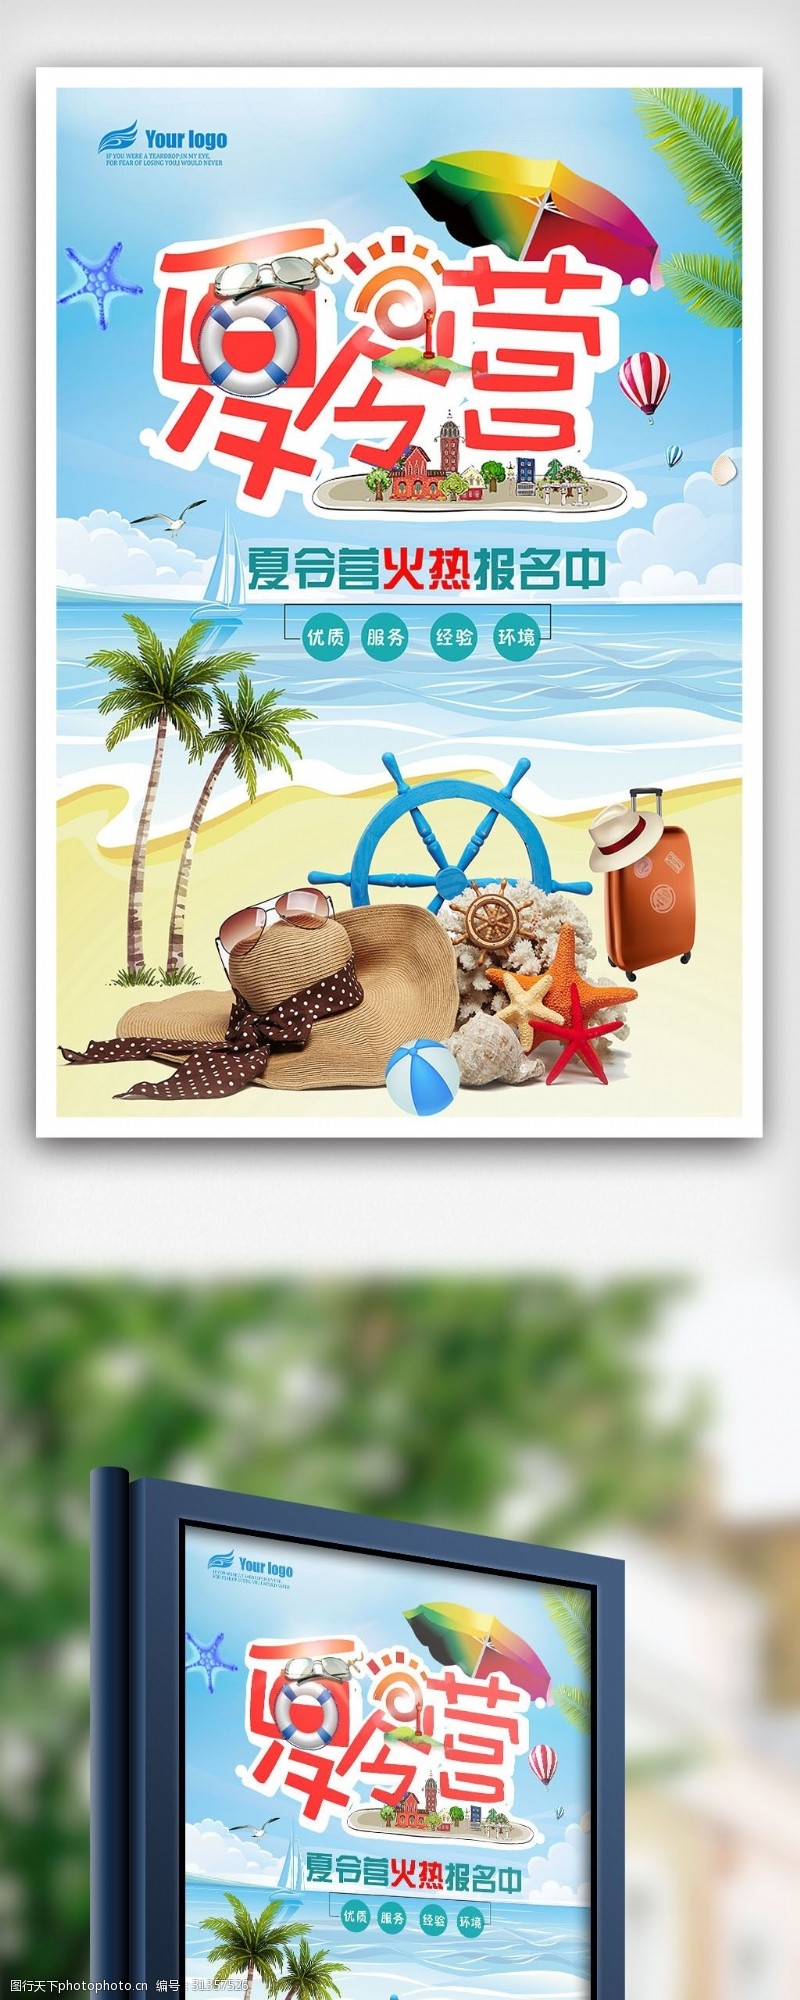 青少年沙滩2018年创意夏令营海报免费模板设计